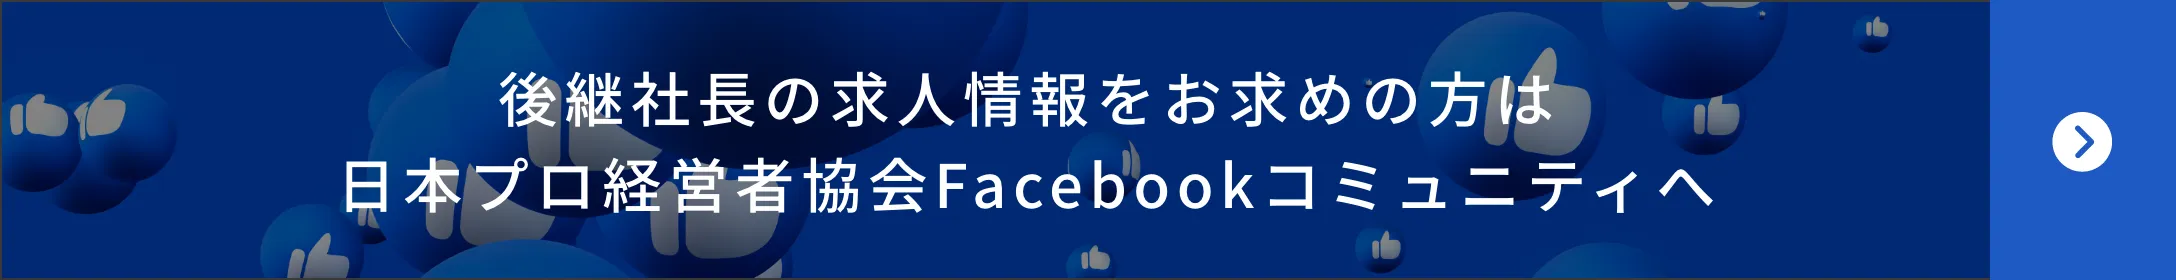 後継社長の求人情報をお求めの方は日本プロ経営者協会Facebookコミュニティへ